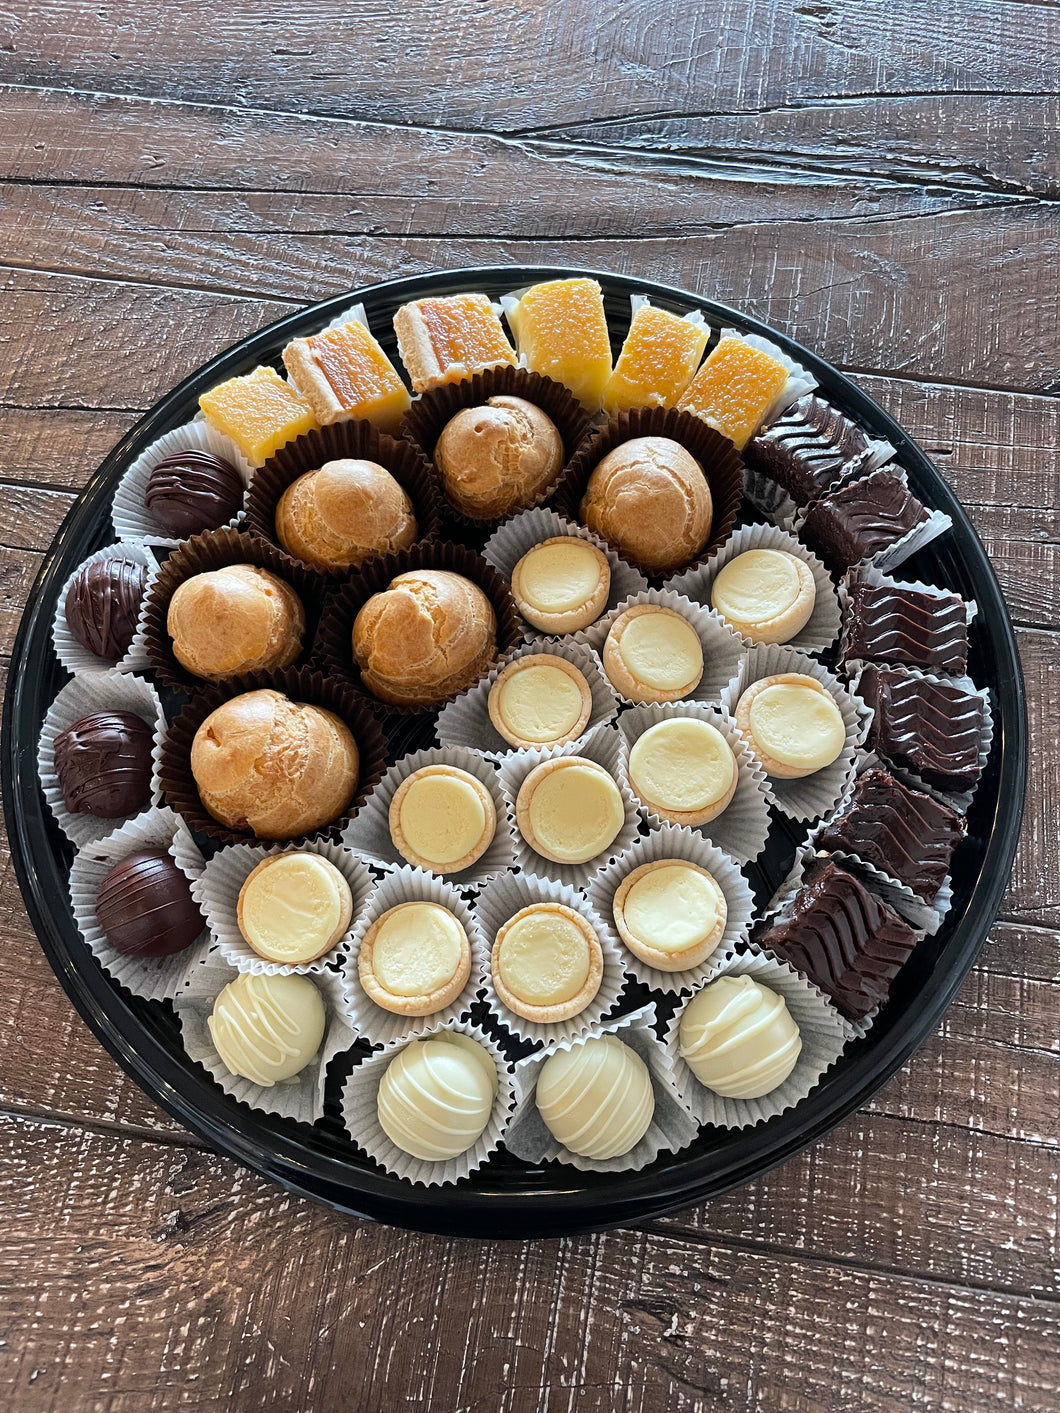 Pastry tray